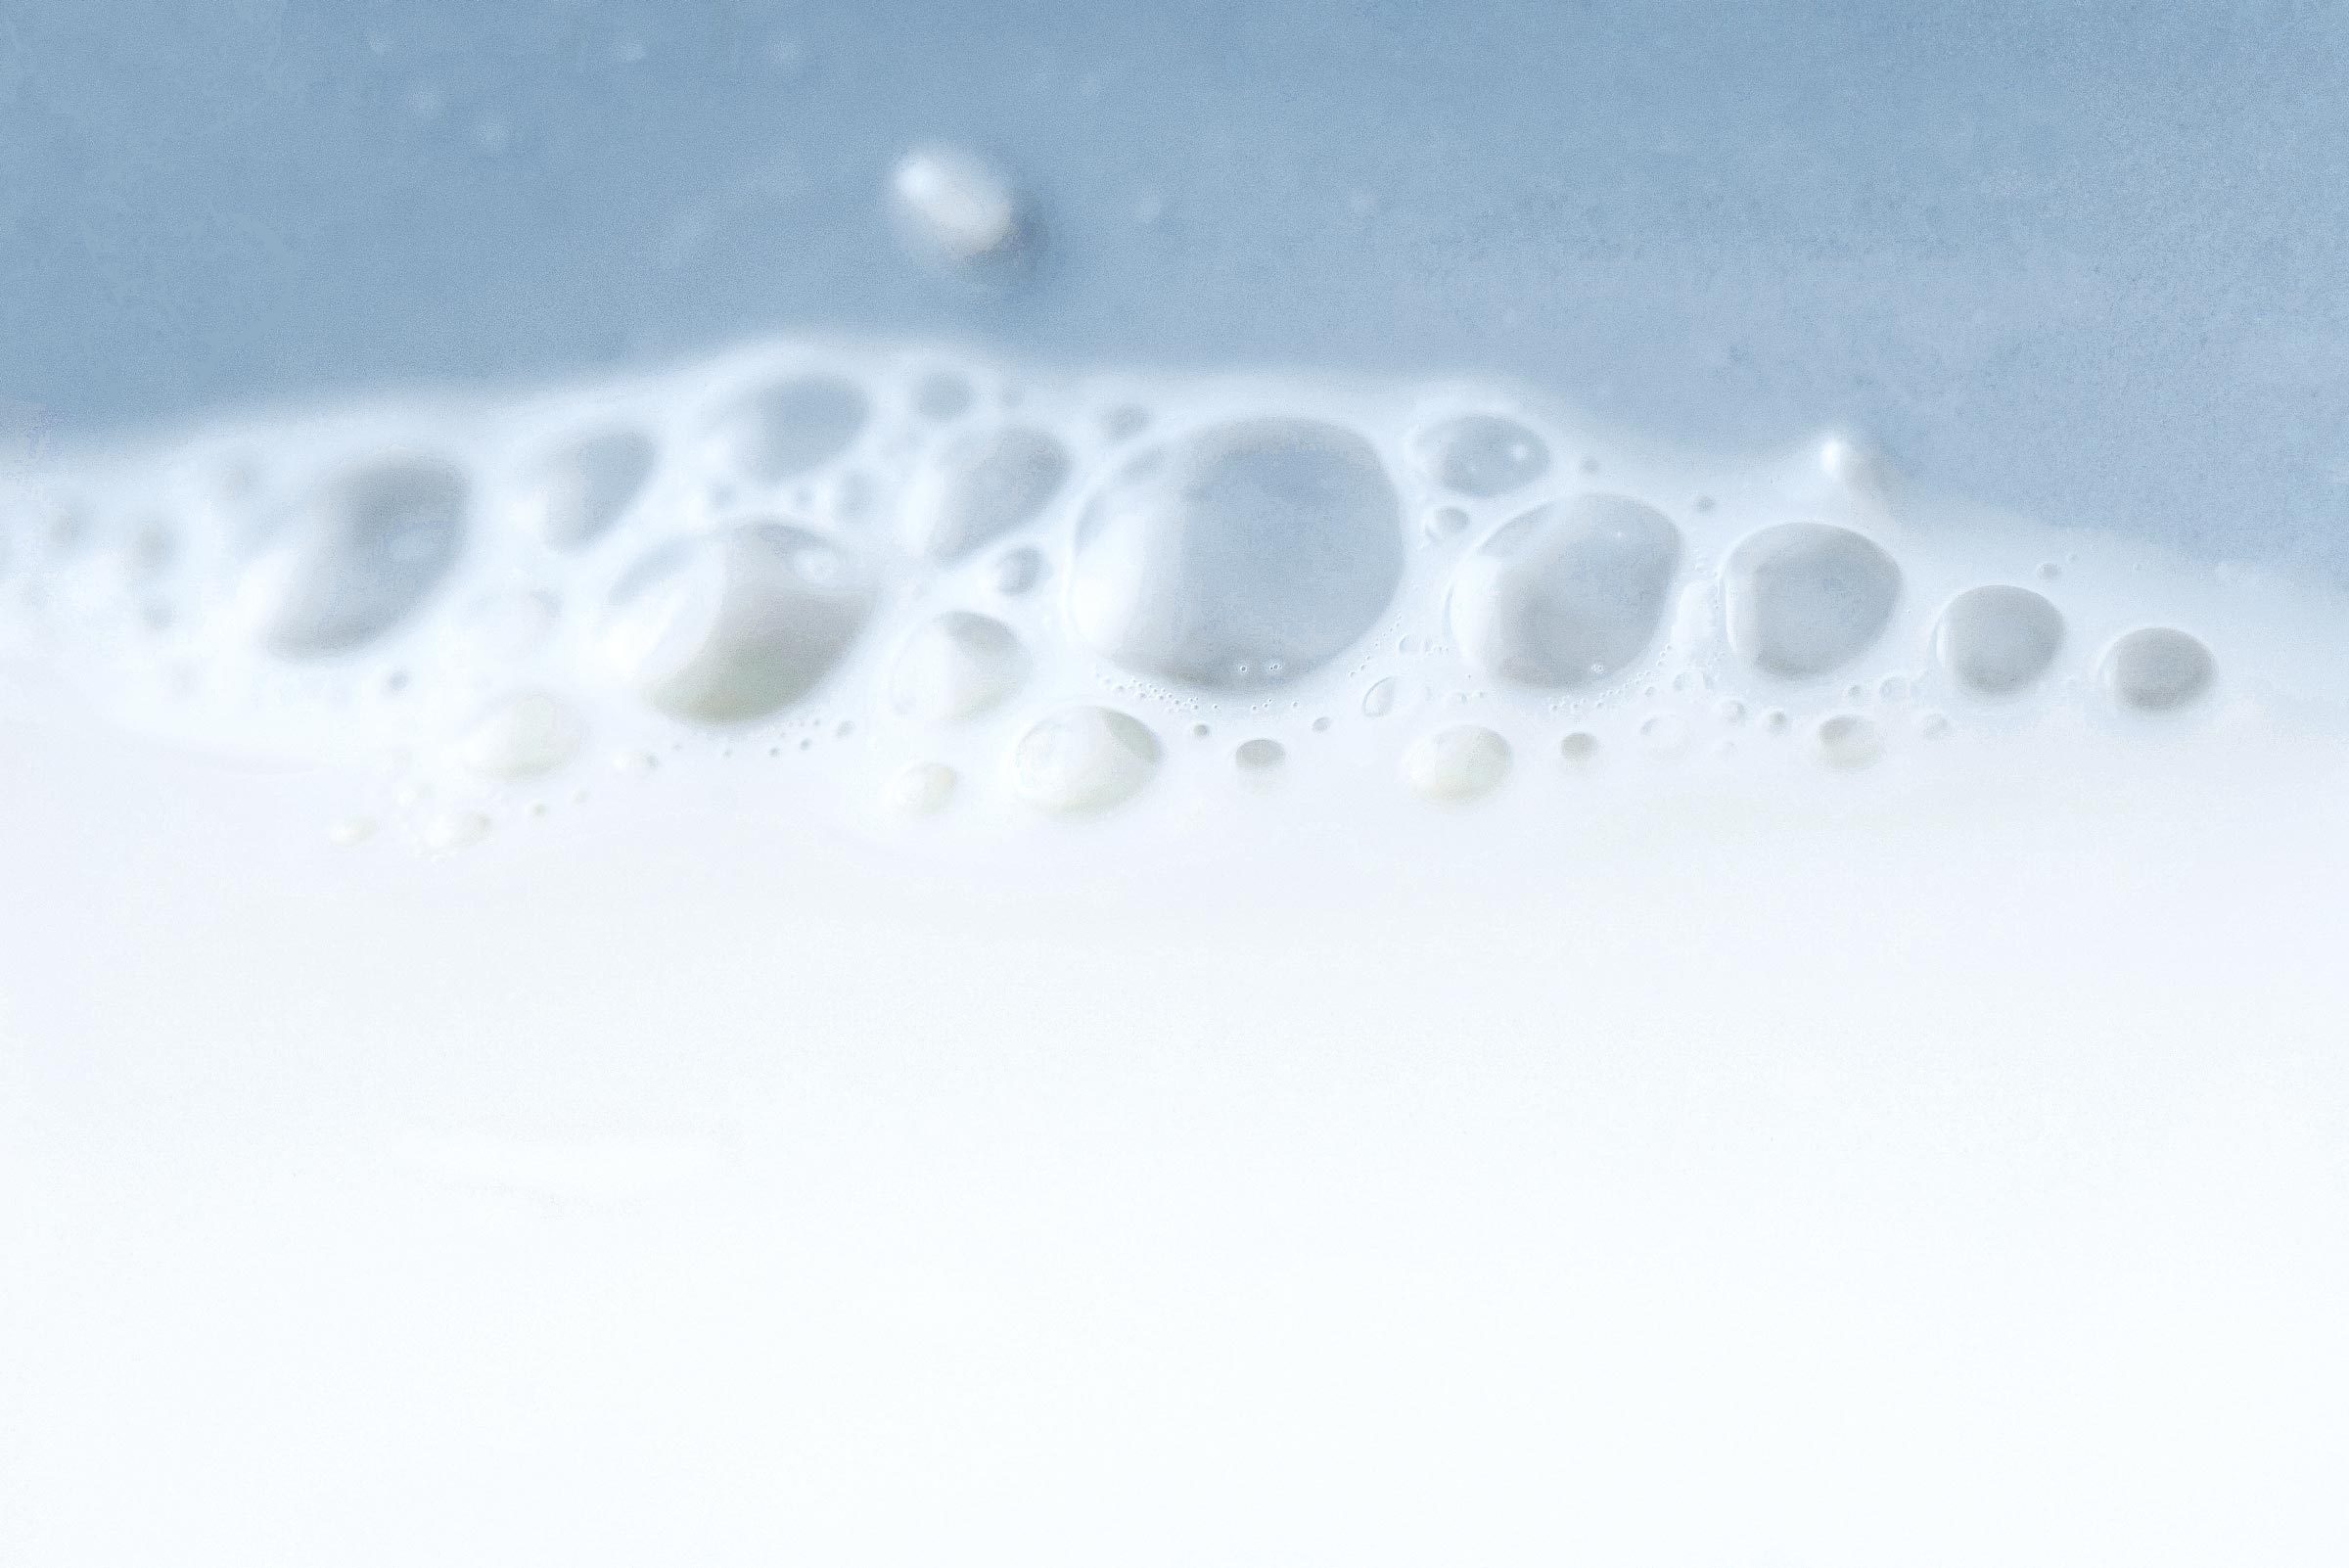 Milk bubbles, extreme close-up|